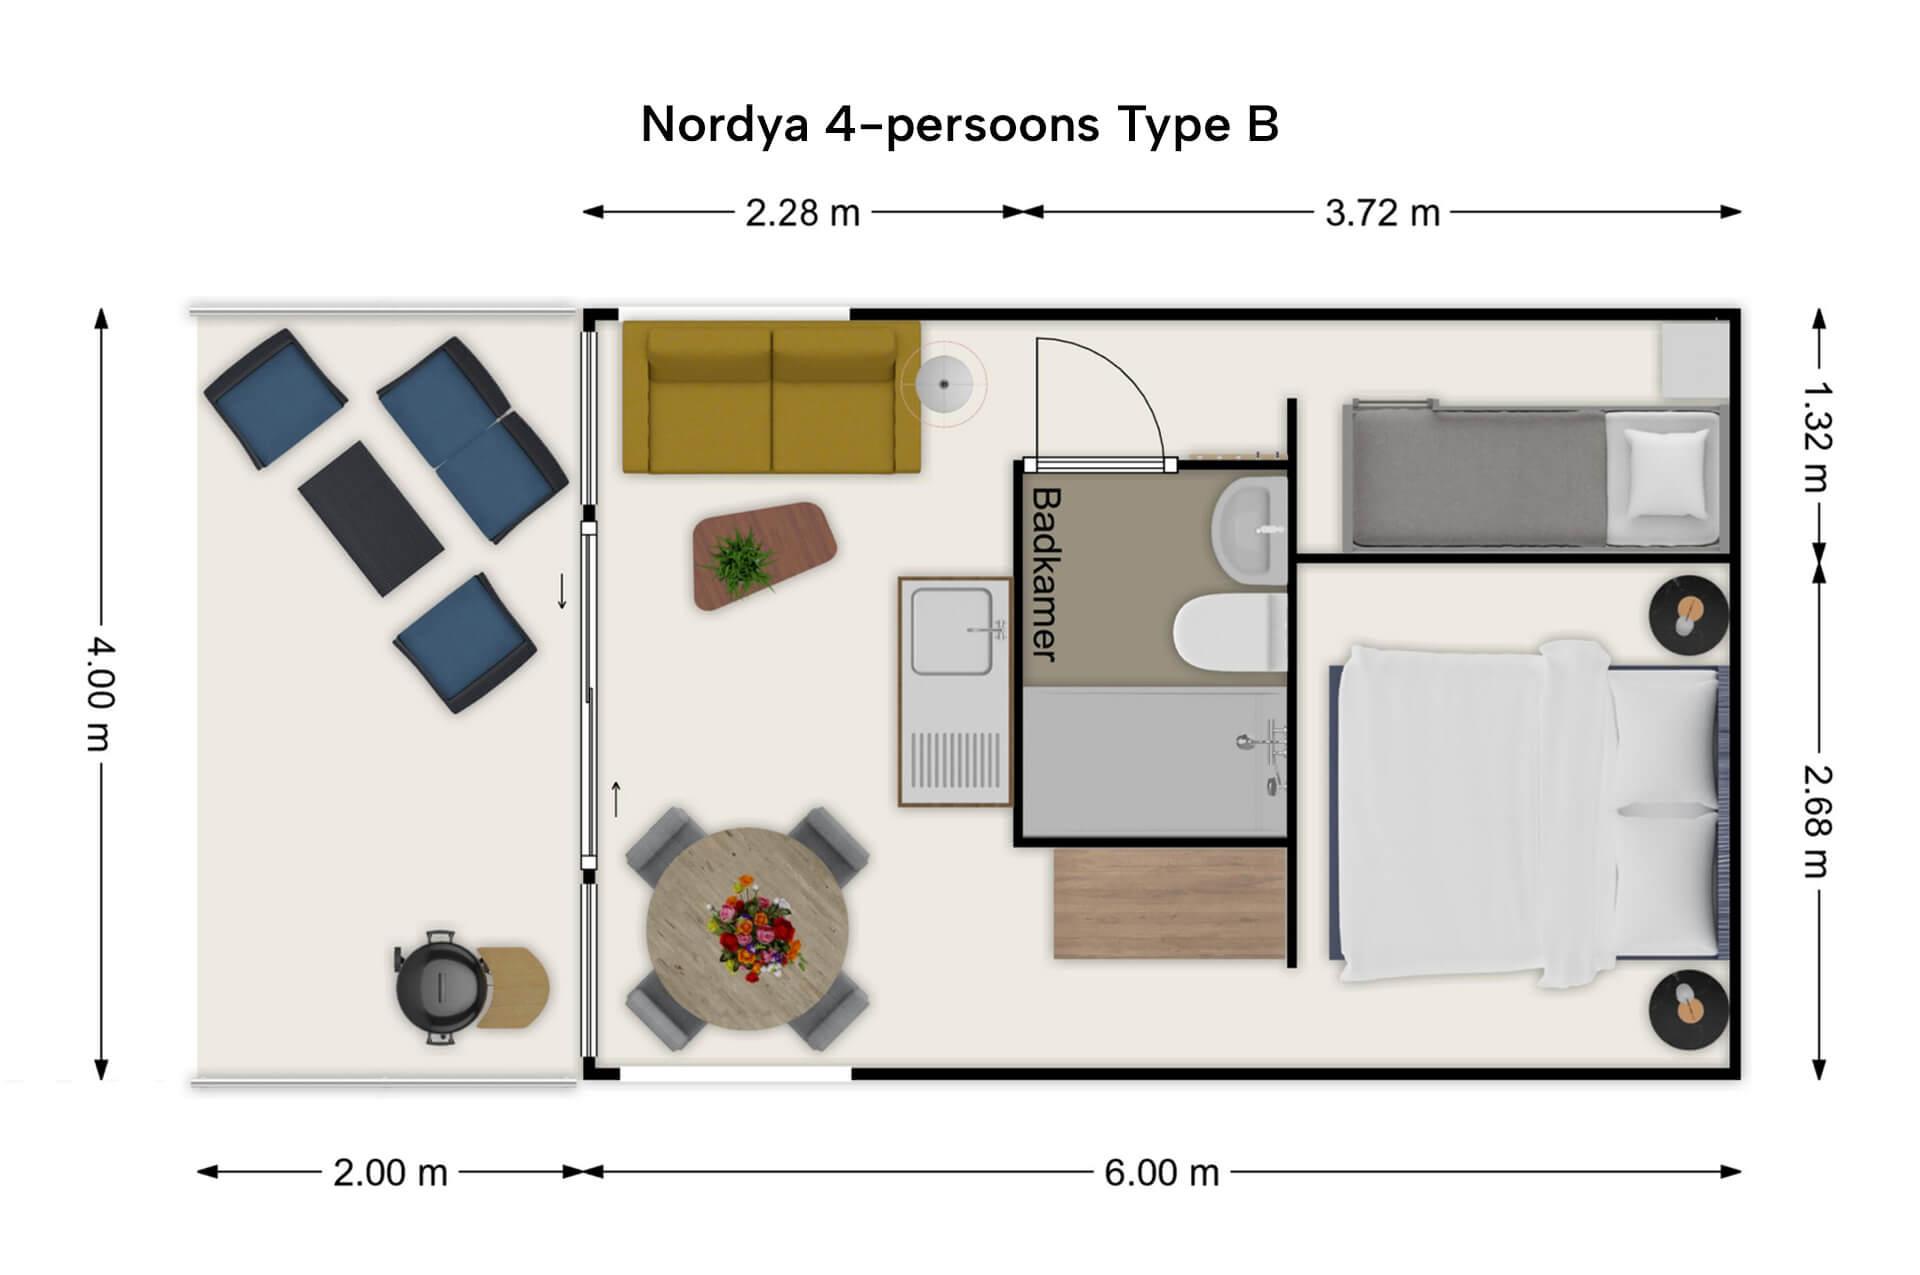 Nordya 4-persoons Type-B